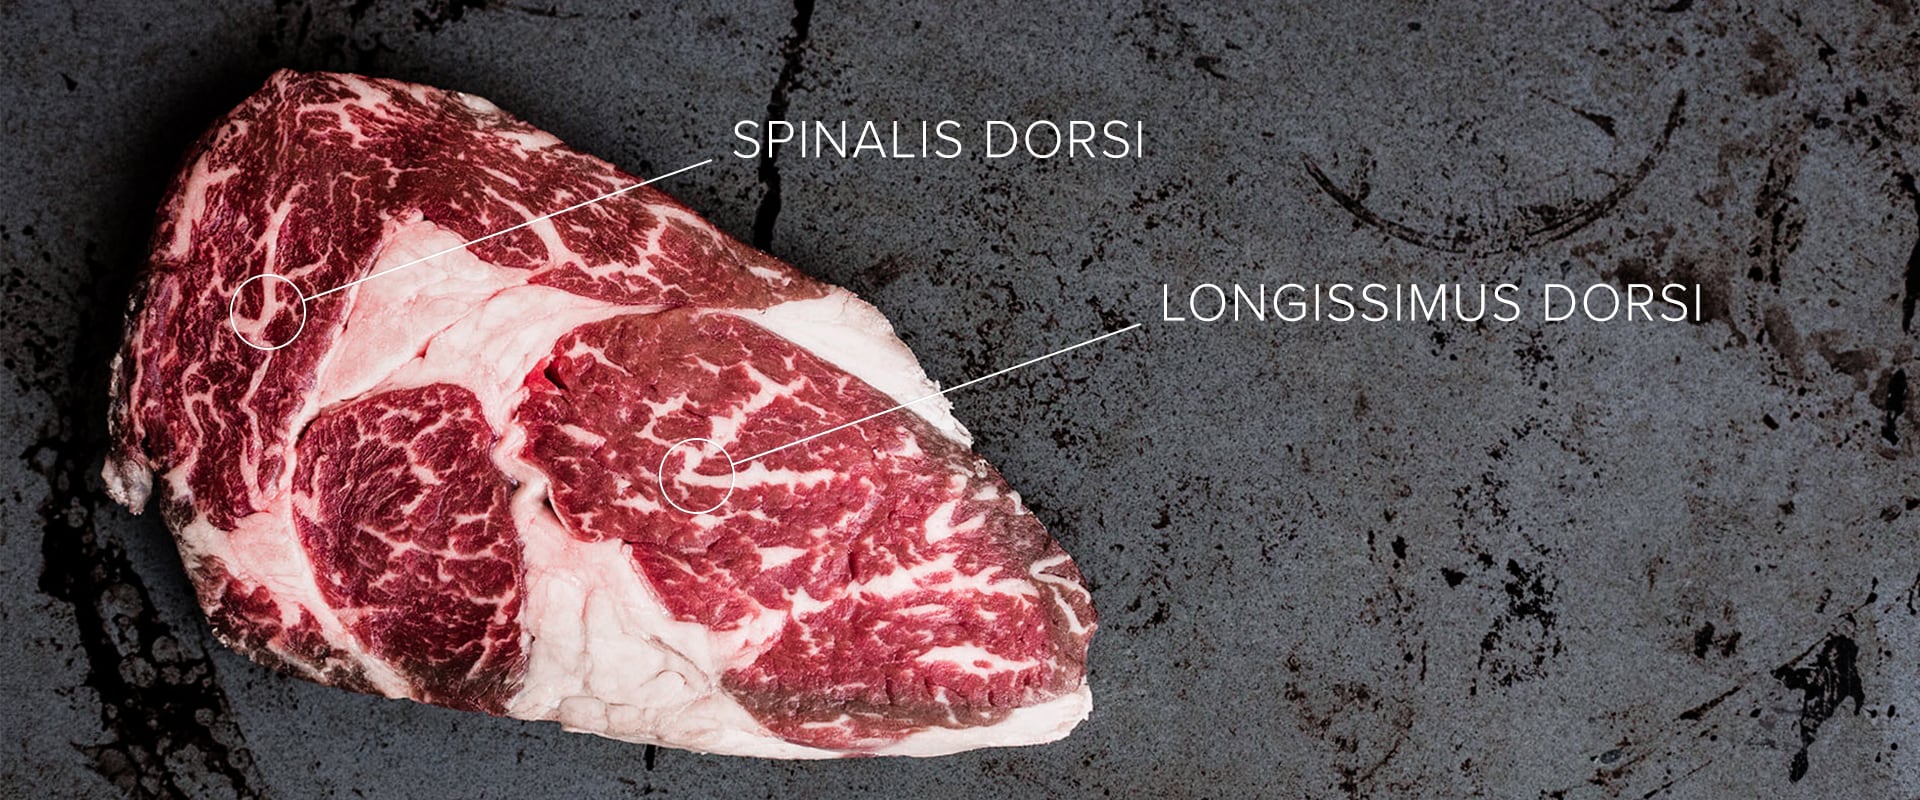 Spinalis Dorsi oder Ribeye Cap: Das beste Steak der Welt?